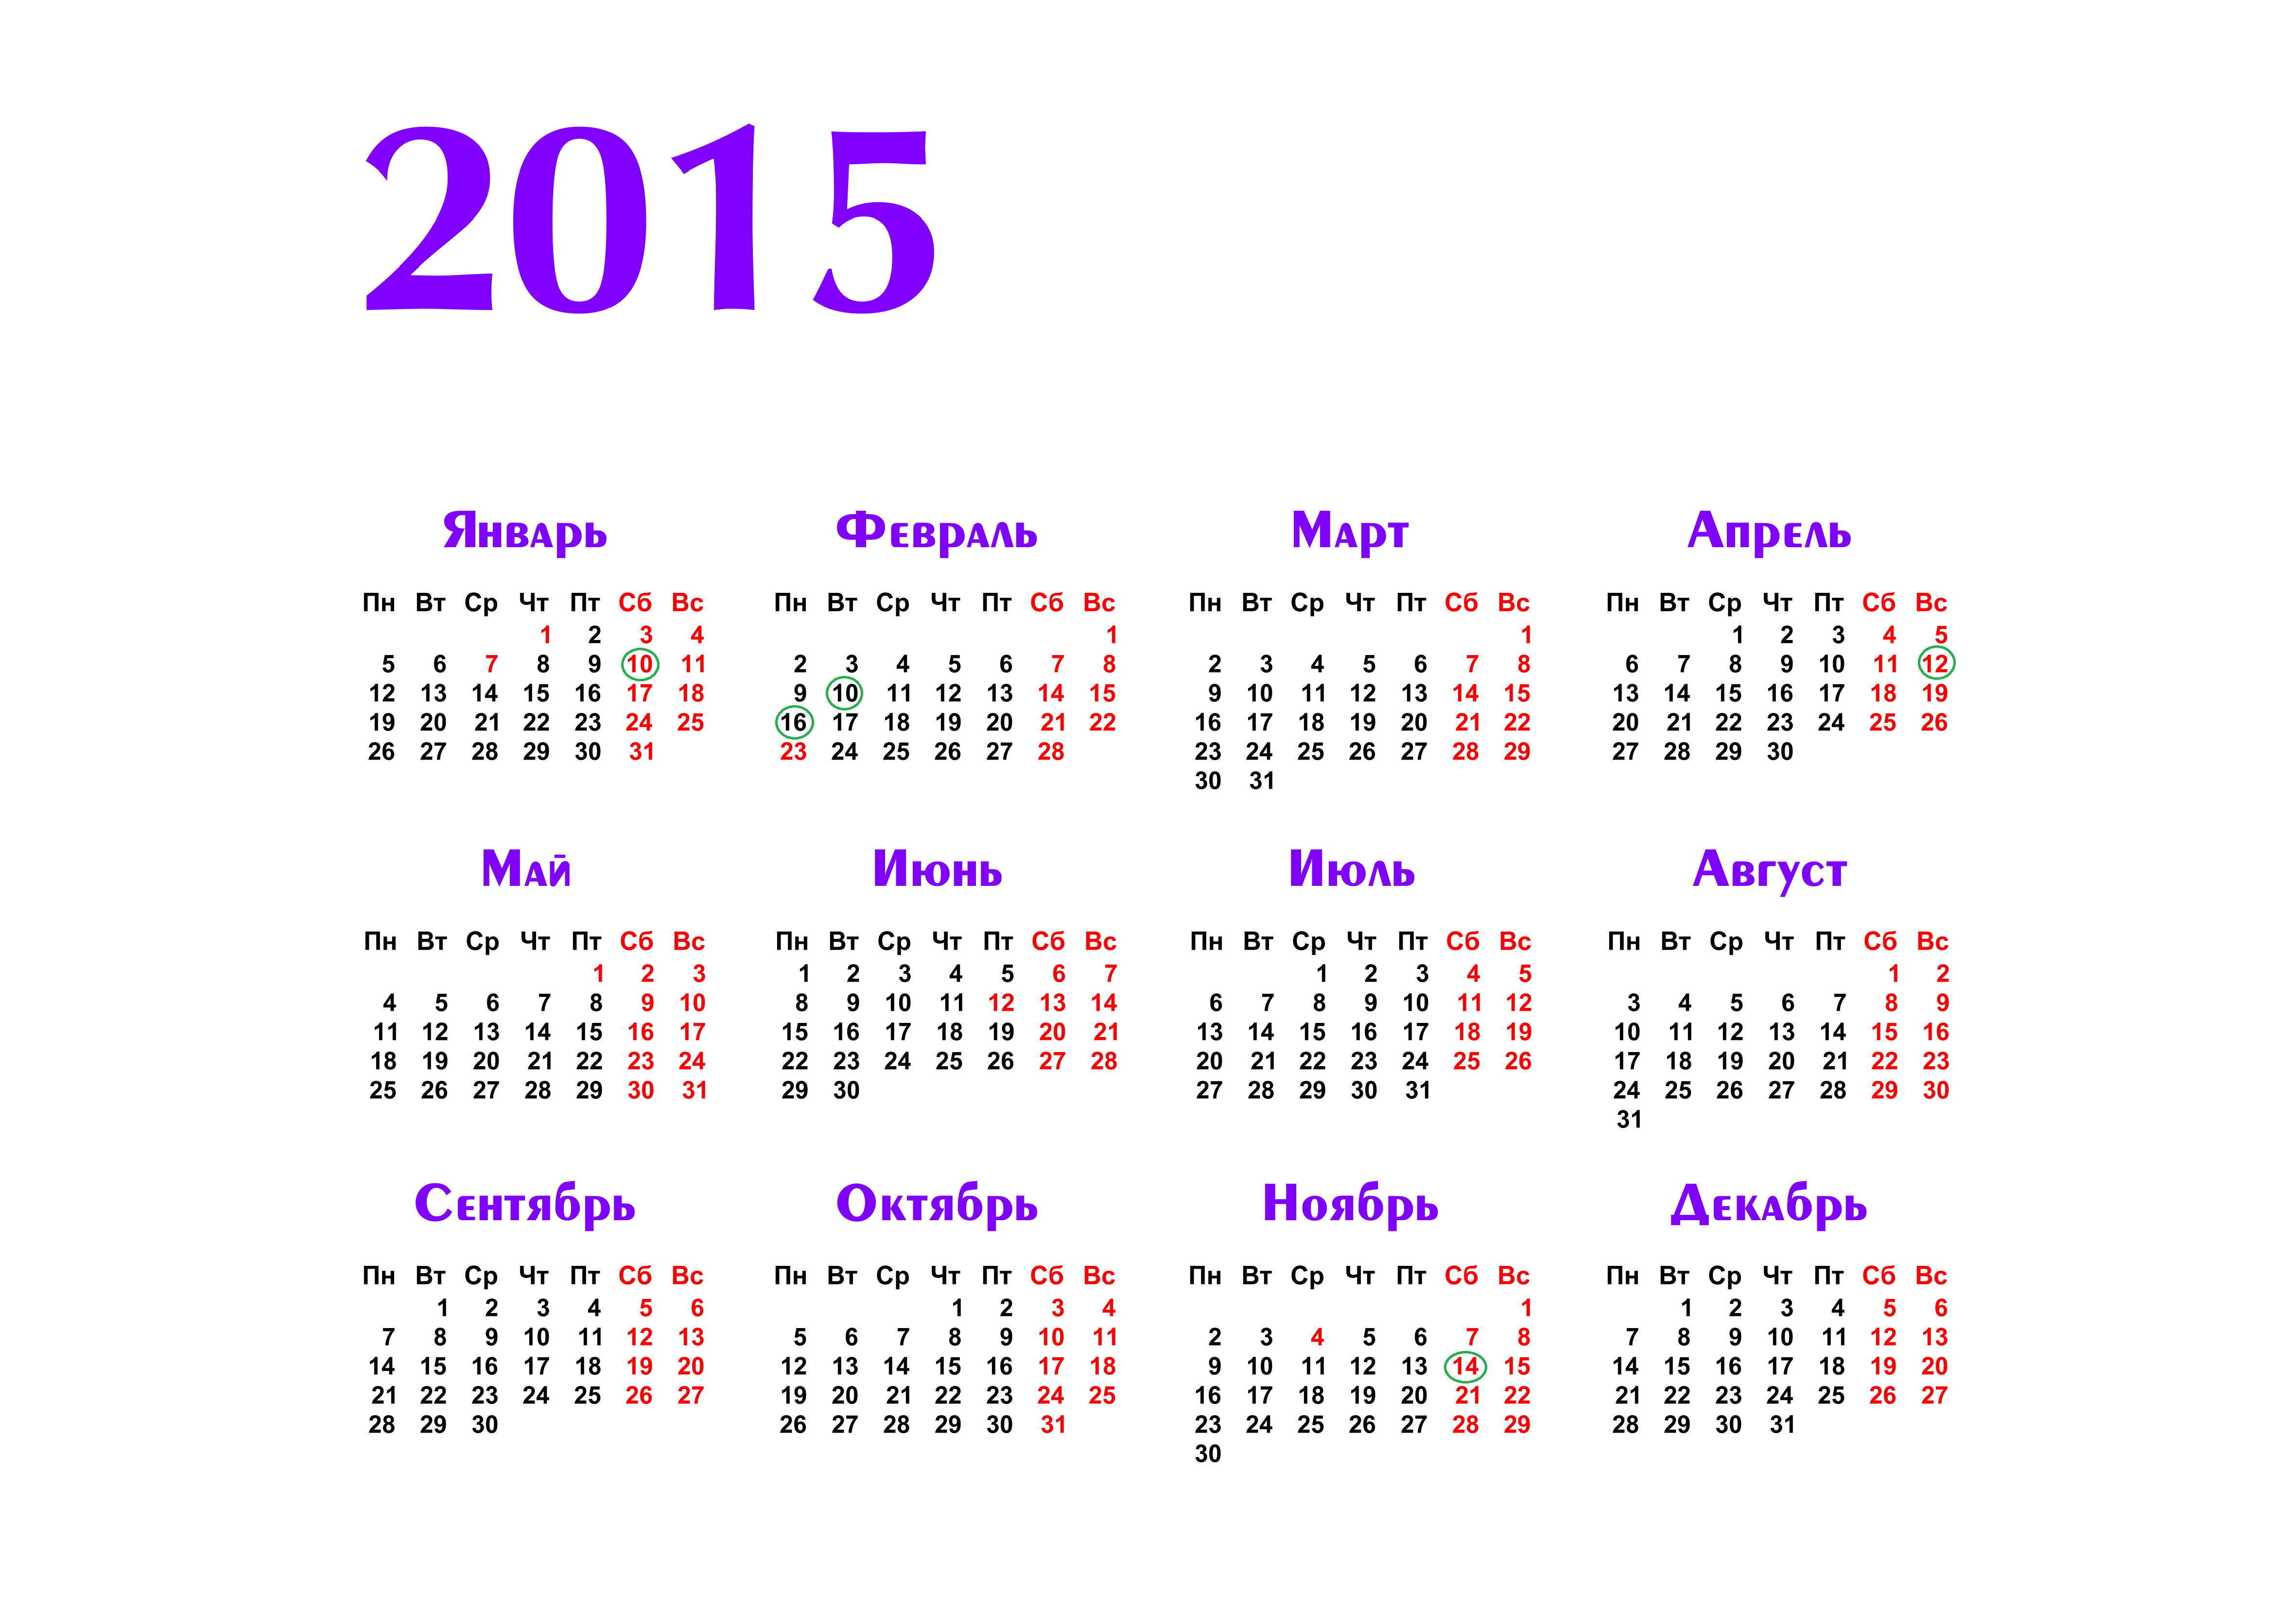 Дат 2015. Календарь на 2015 год. Календарь 2015 года по месяцам. Календарь 2015г.по месяцам. Календарь 2015г.по месяцам календарные дни.